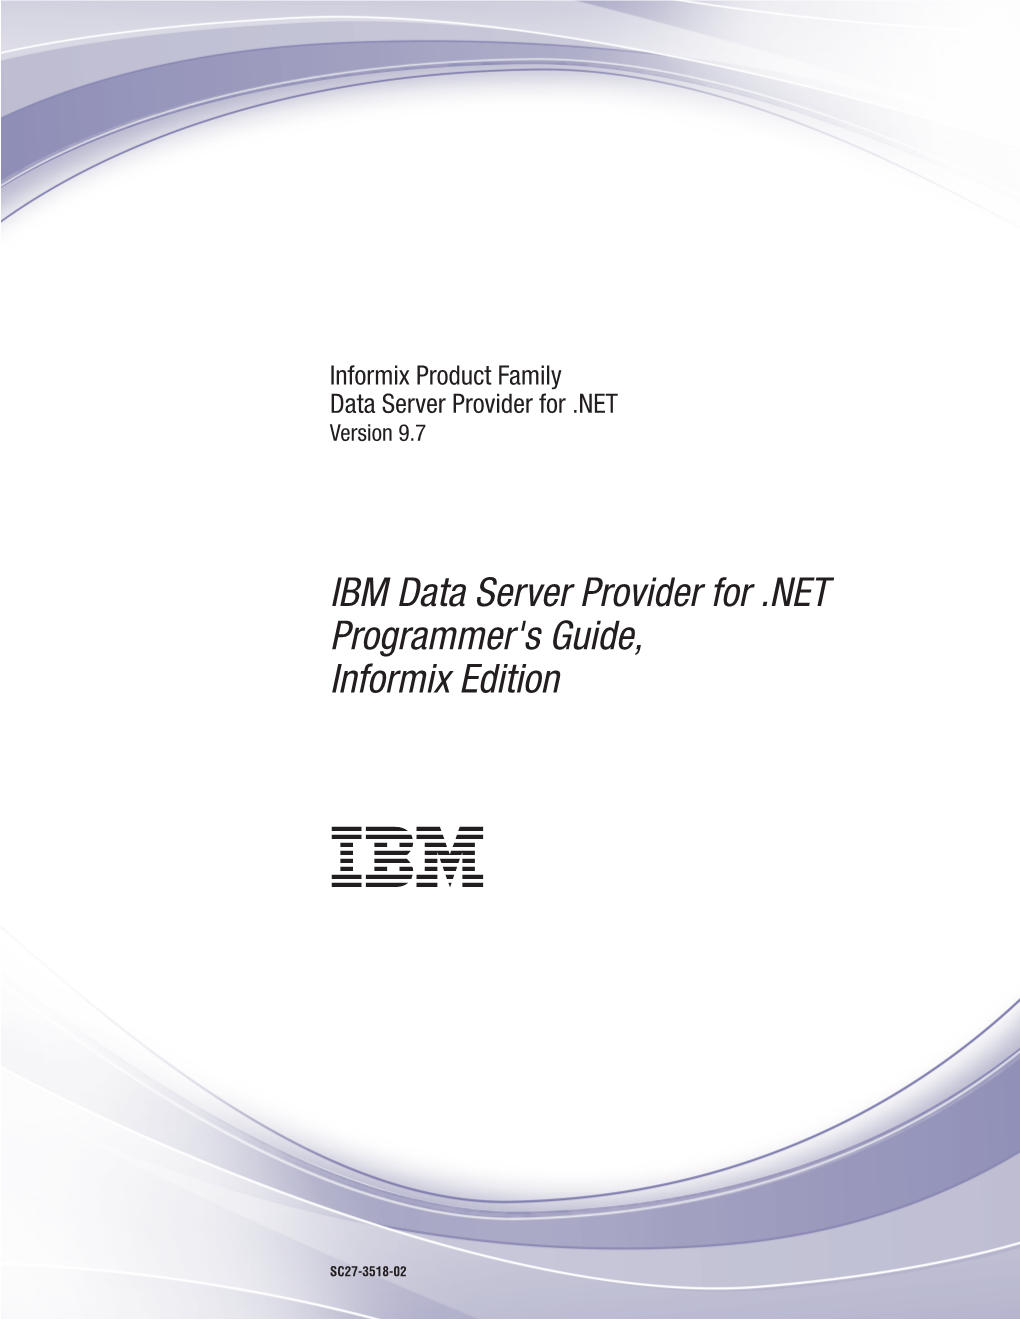 IBM Data Server Provider for .NET Programmer's Guide, Informix Edition